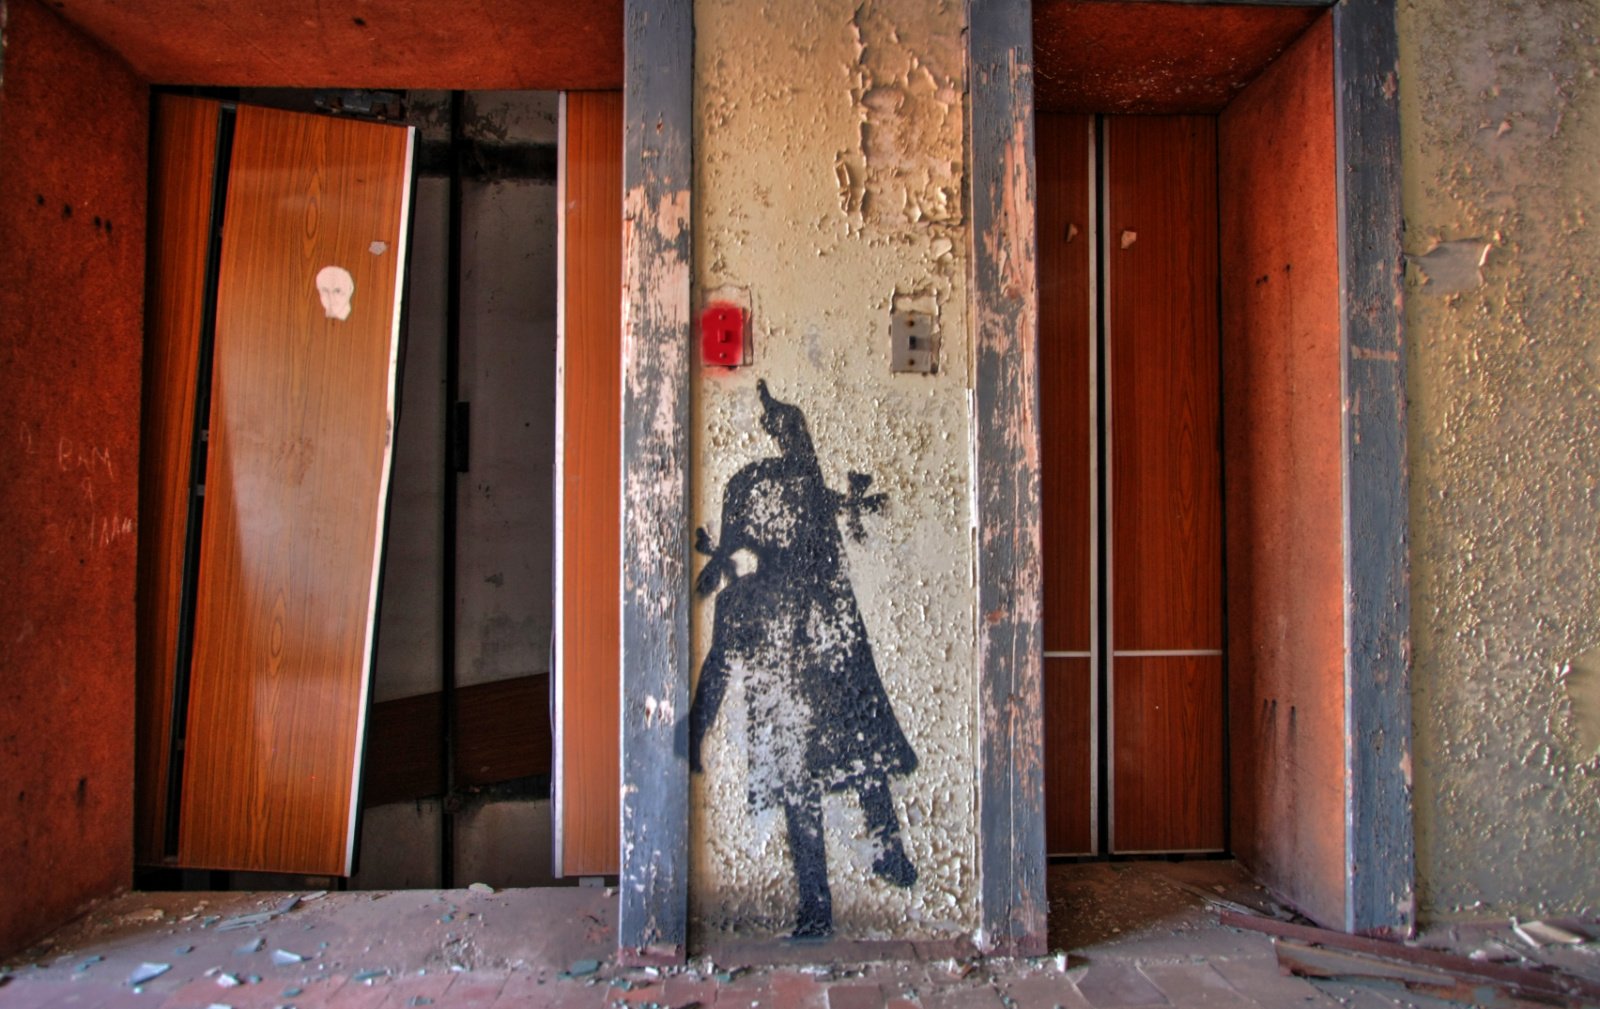 Как увидеть рисунки «теней Хиросимы» в Чернобыле